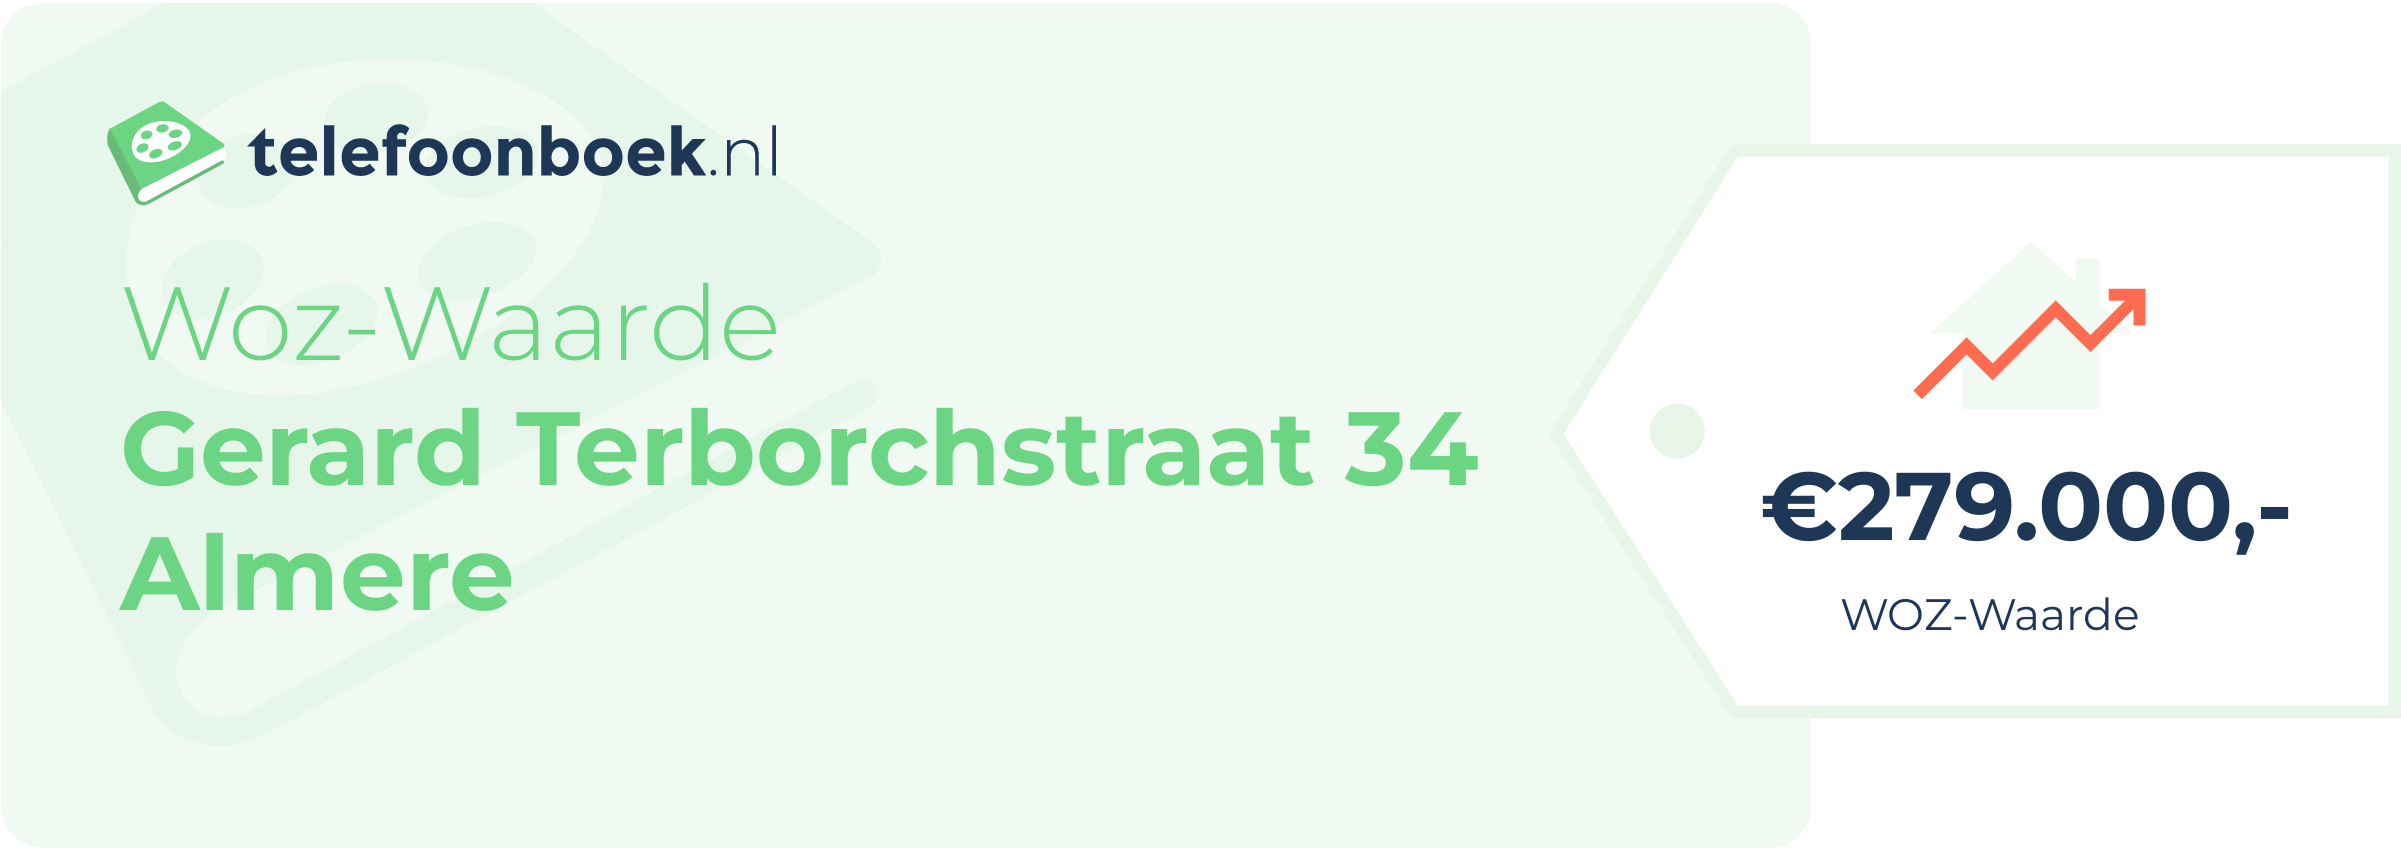 WOZ-waarde Gerard Terborchstraat 34 Almere